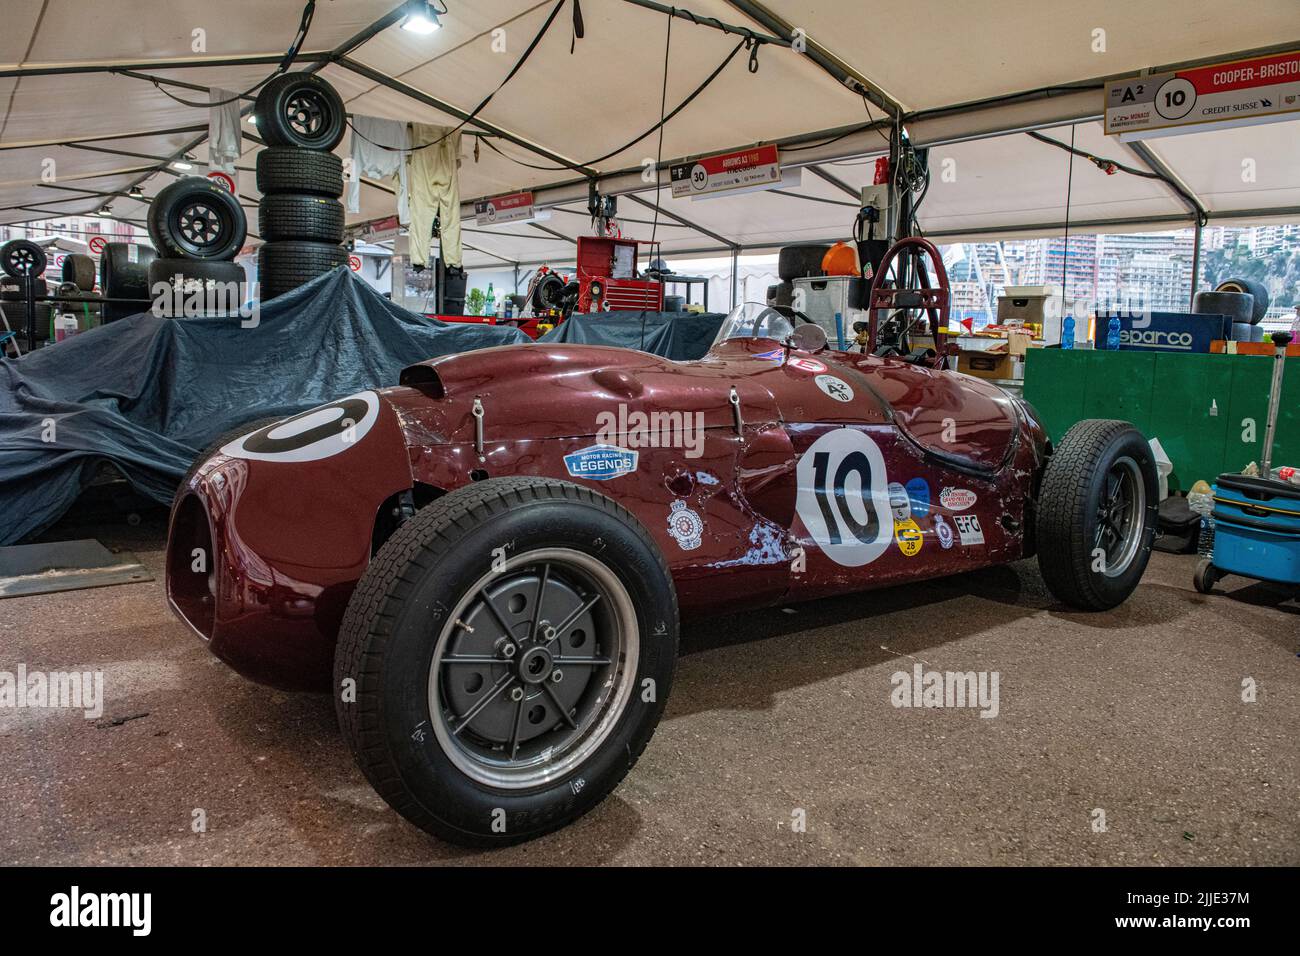 A Cooper Bristol in the pits of the historic Grand Prix in Monaco Stock Photo